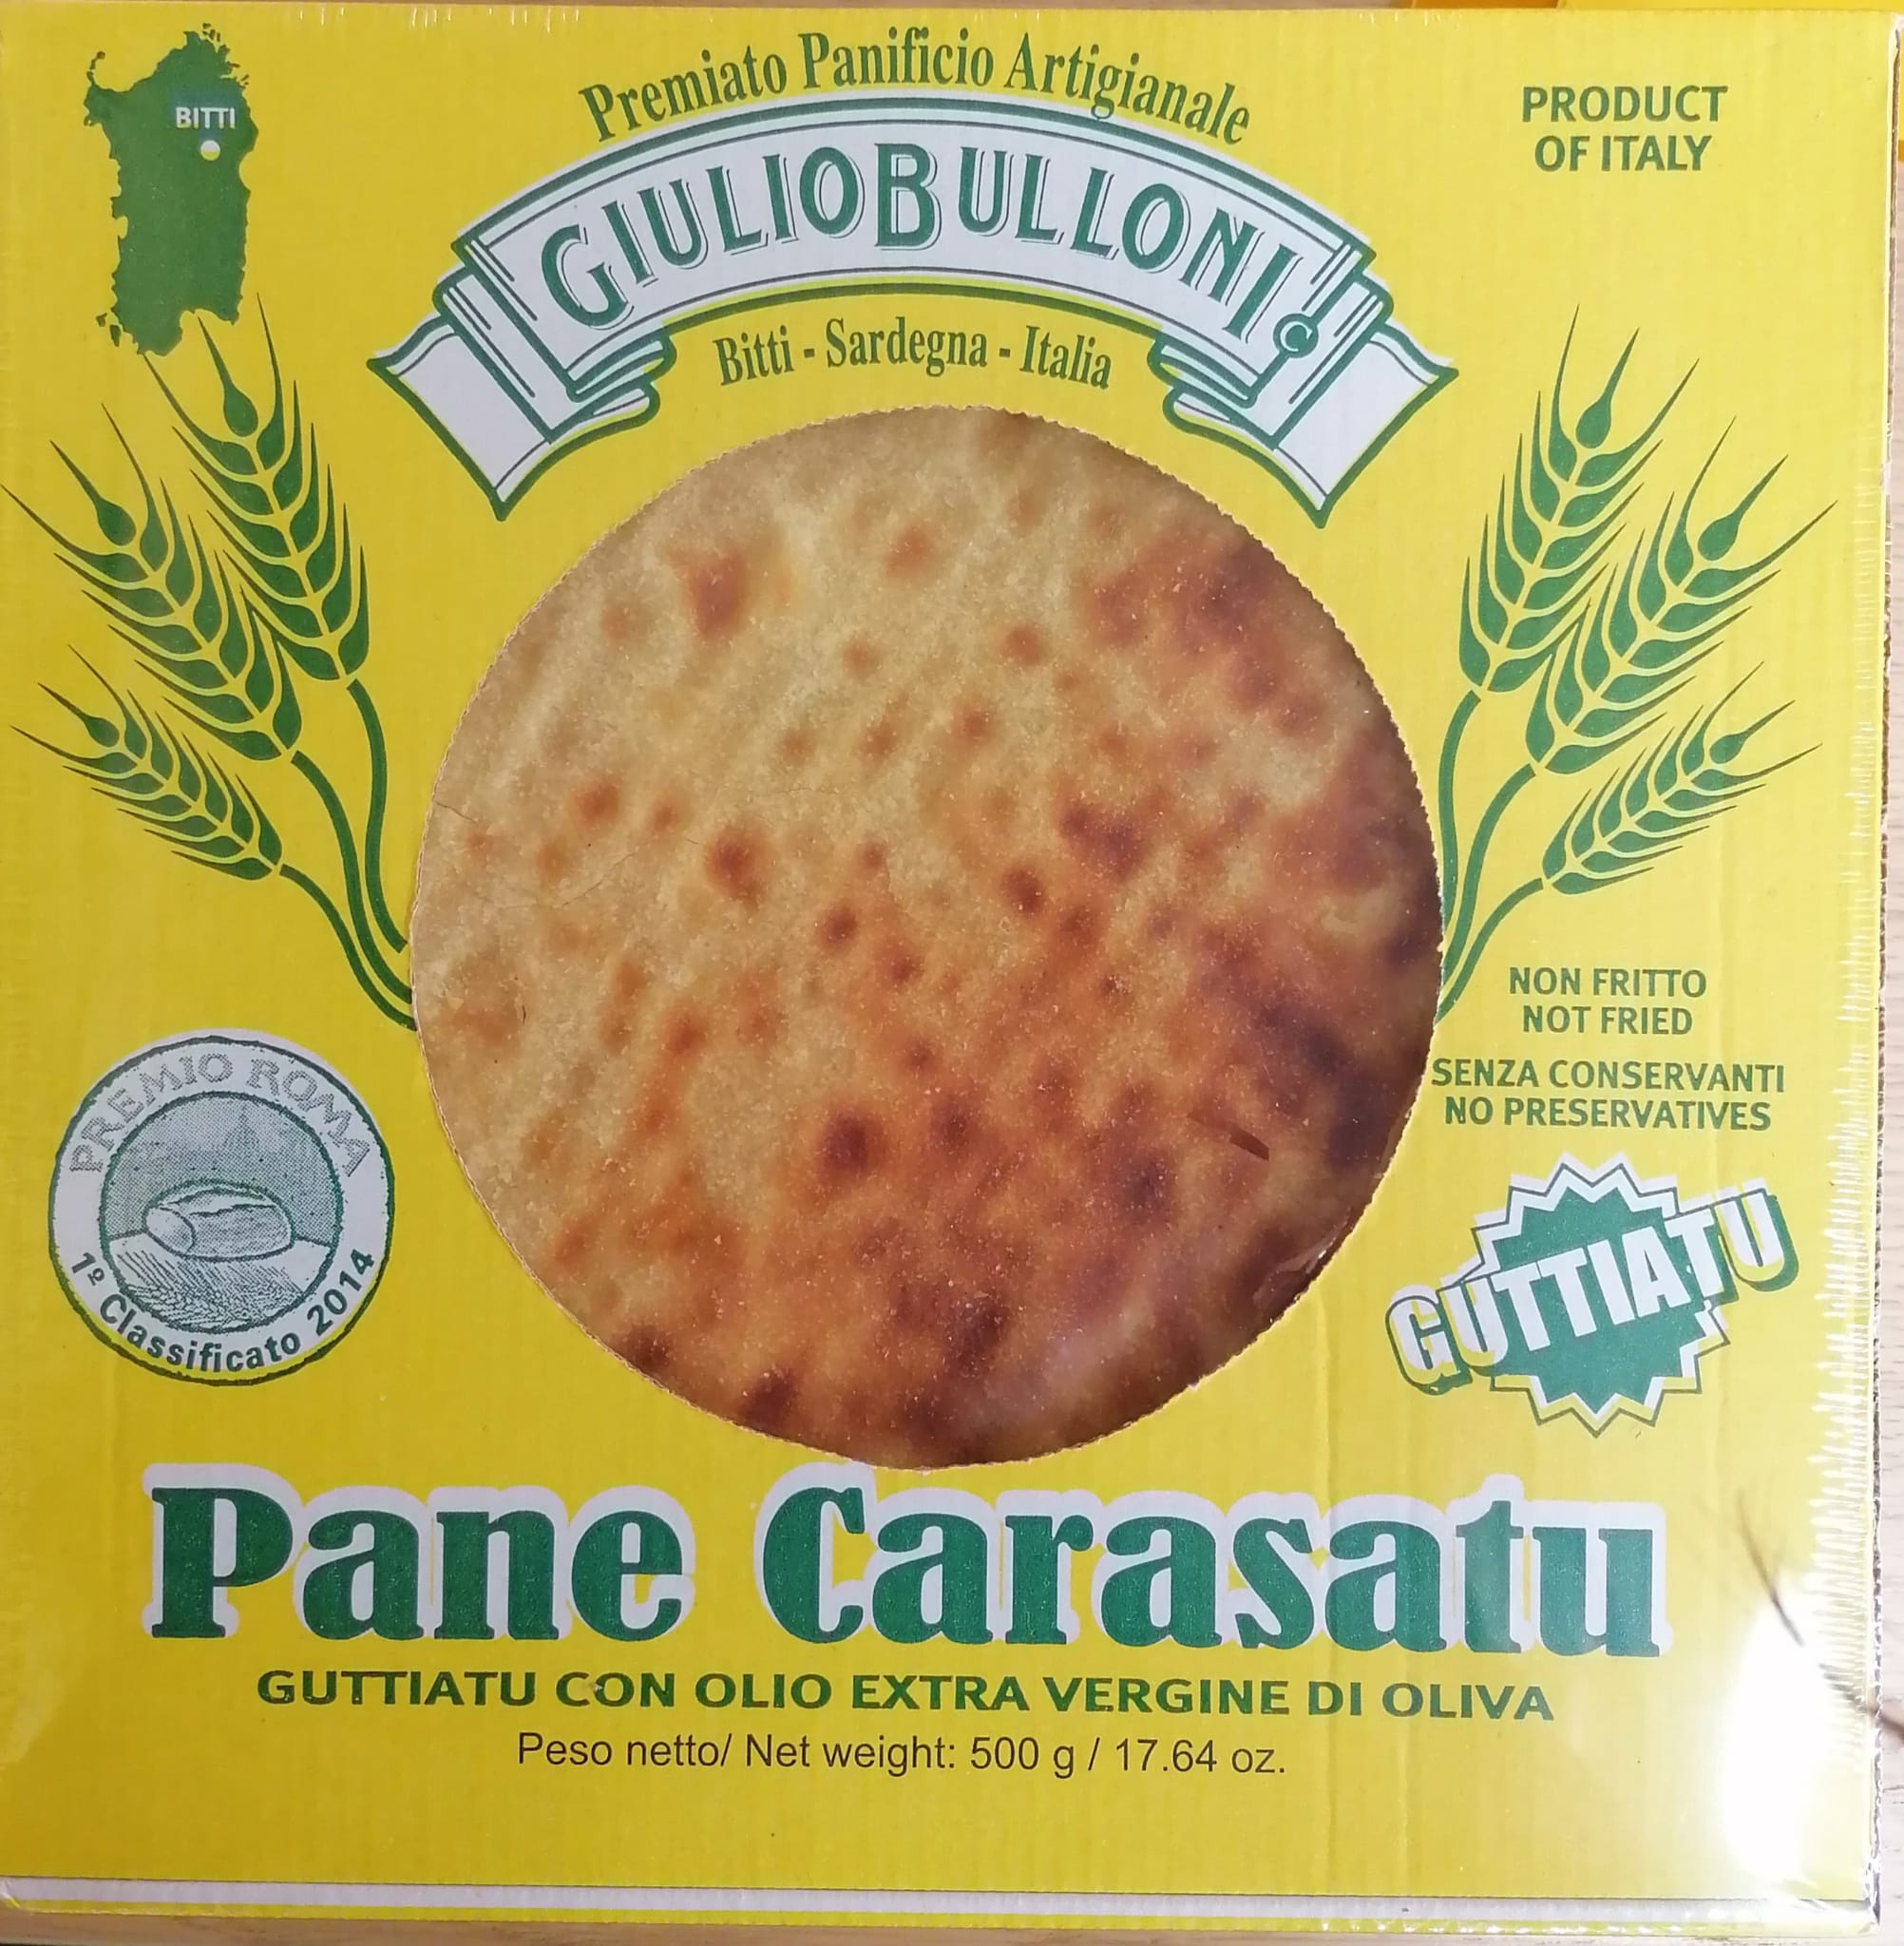 Carasatu  Guttiatu bread with evo oil 250g